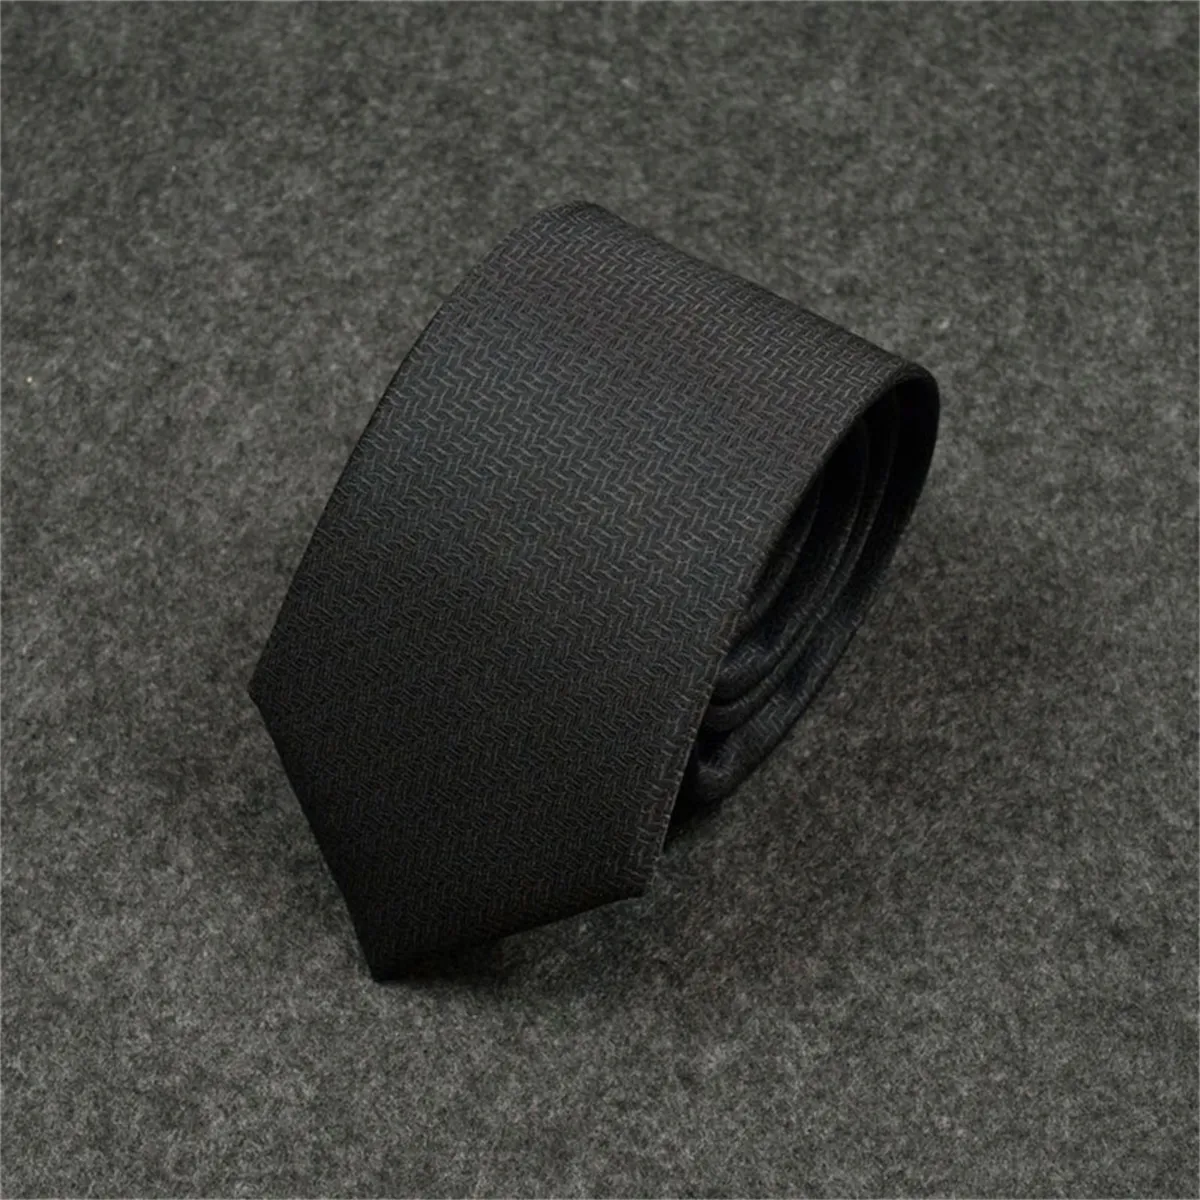 H2023 Nouveaux hommes cravates mode cravate en soie 100% cravate de créateur Jacquard classique tissé à la main cravate pour hommes de mariage cravates décontractées et d'affaires avec boîte d'origine 6HH96